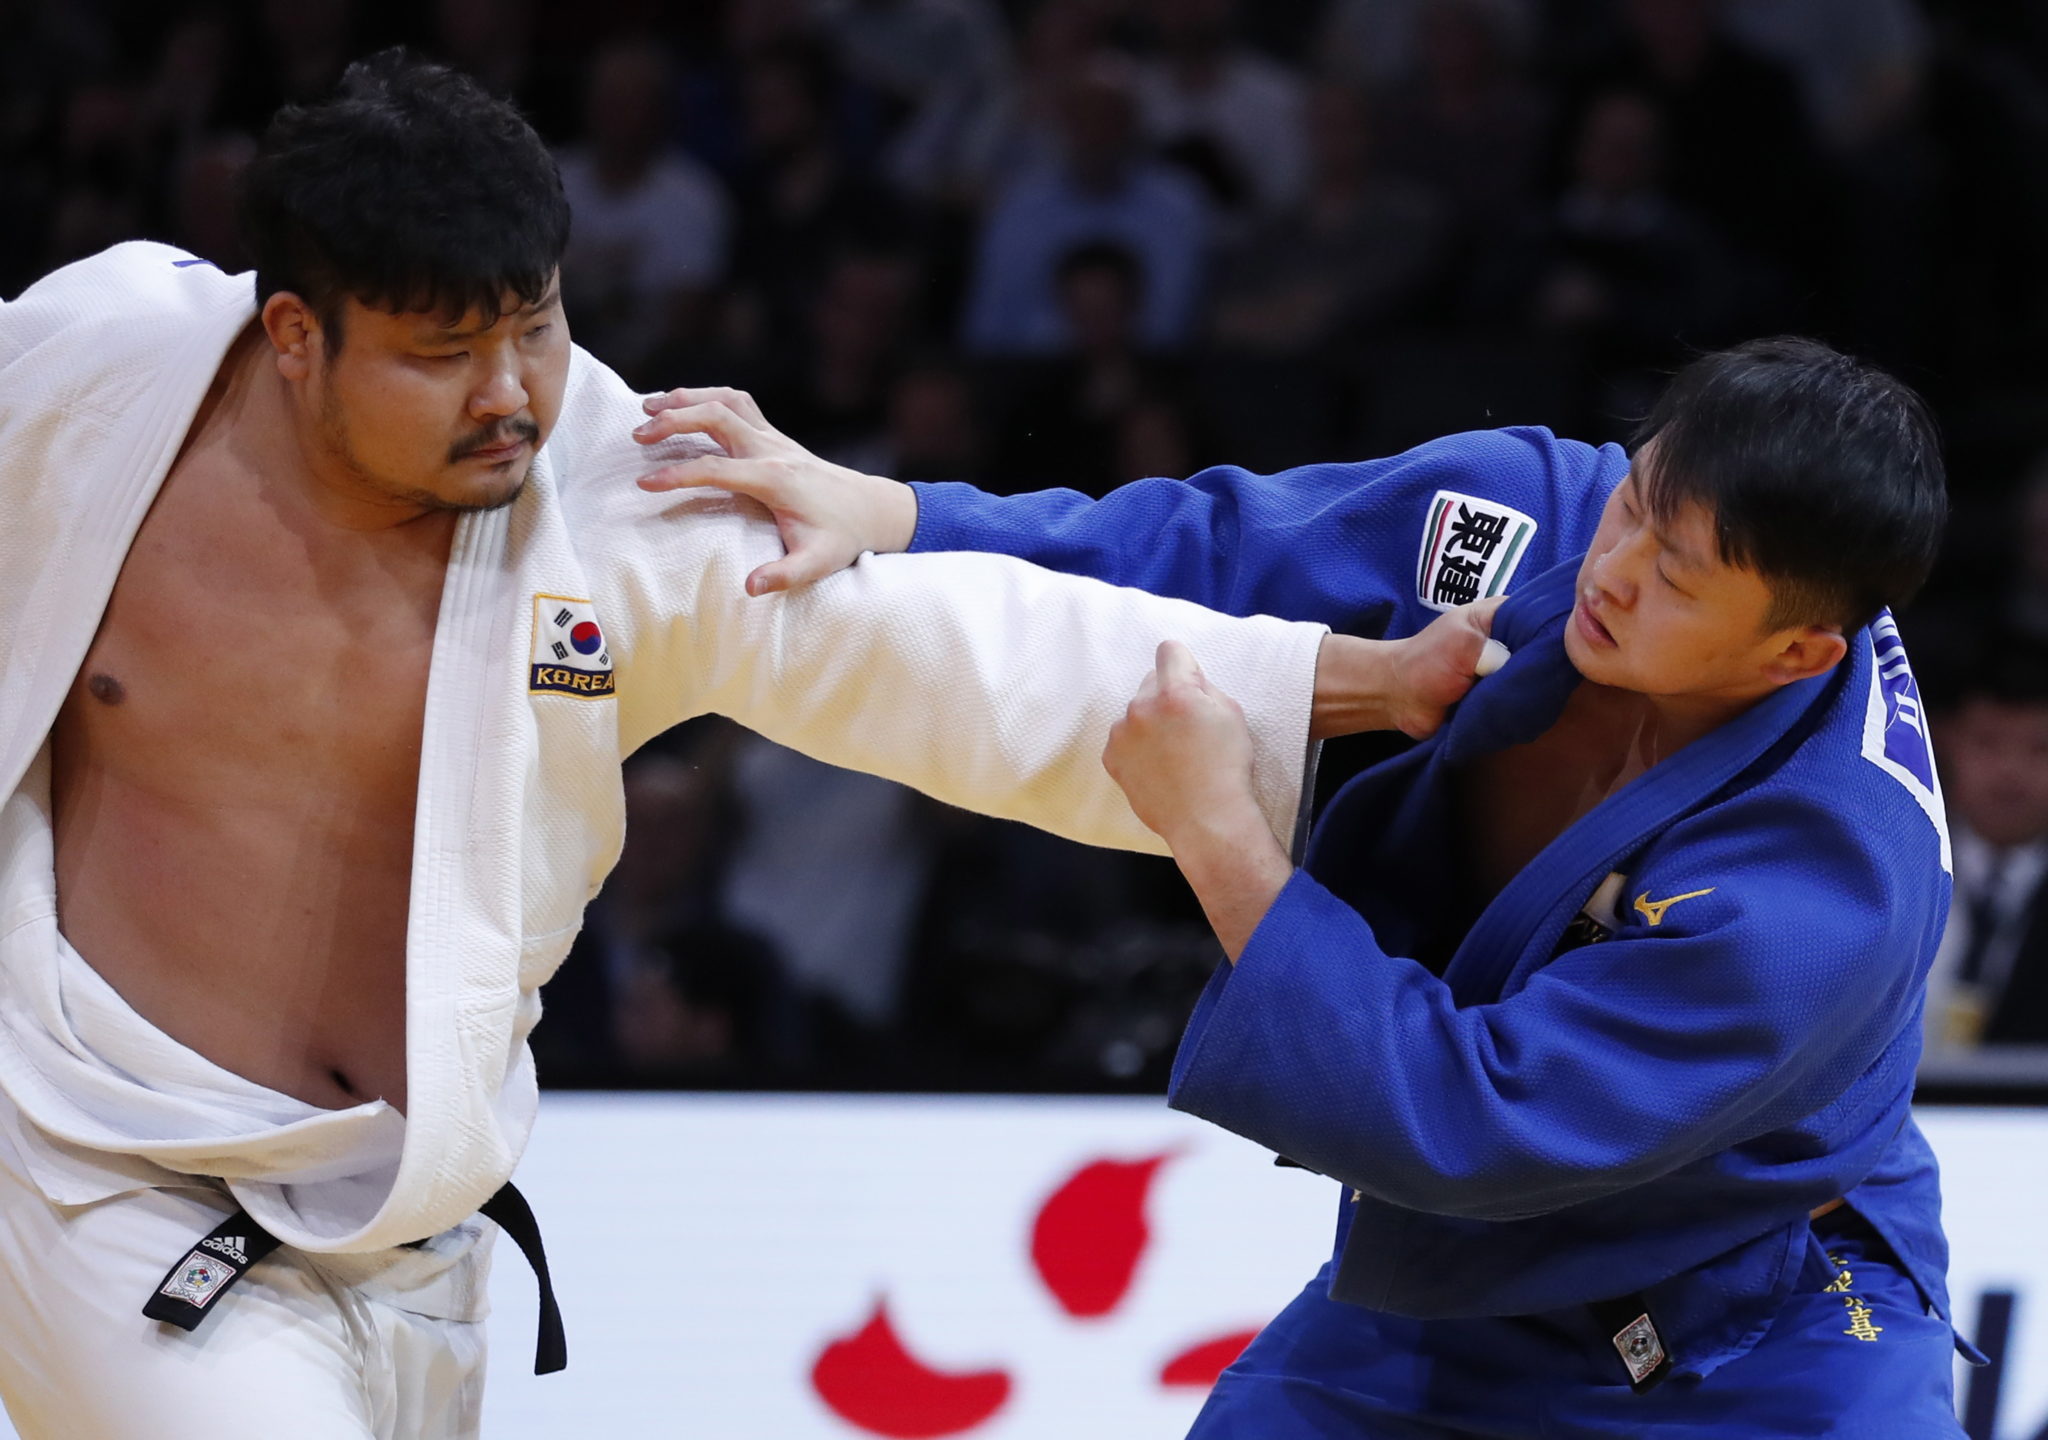 Paryż: Sungmi Kim z Korei (strój biały) w akcji z Hisayoshi Harasawą z Japonii (niebieski) podczas męskiego finału judo (waga 100 kg plus) podczas turnieju Paris Grand Slam judo, fot.IAN LANGSDON, PAP/EPA